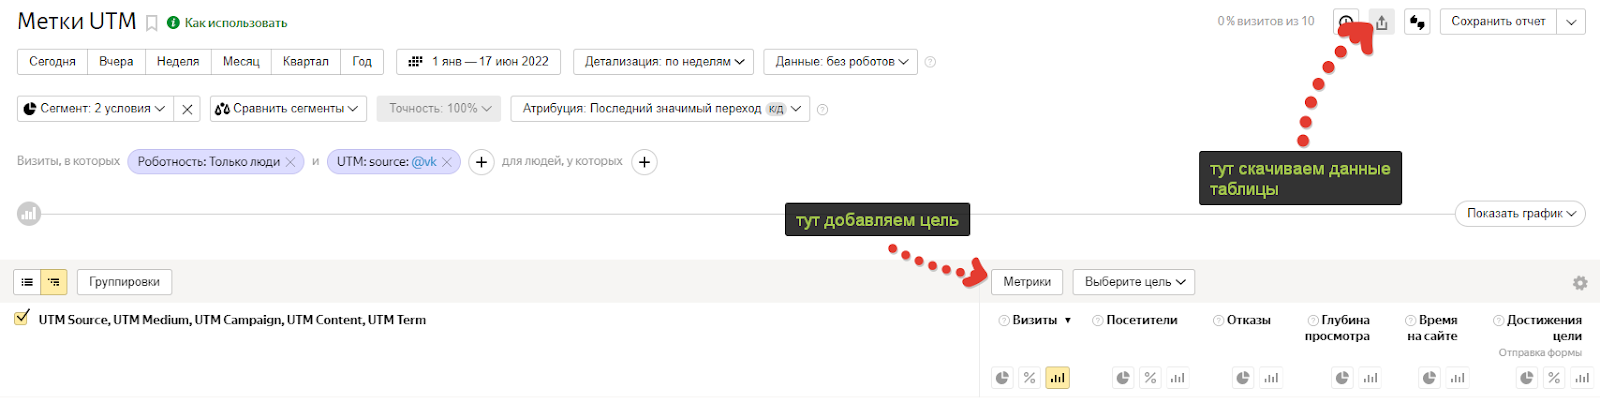 Выгрузка данных по таргетированной рекламе из Вконтакте